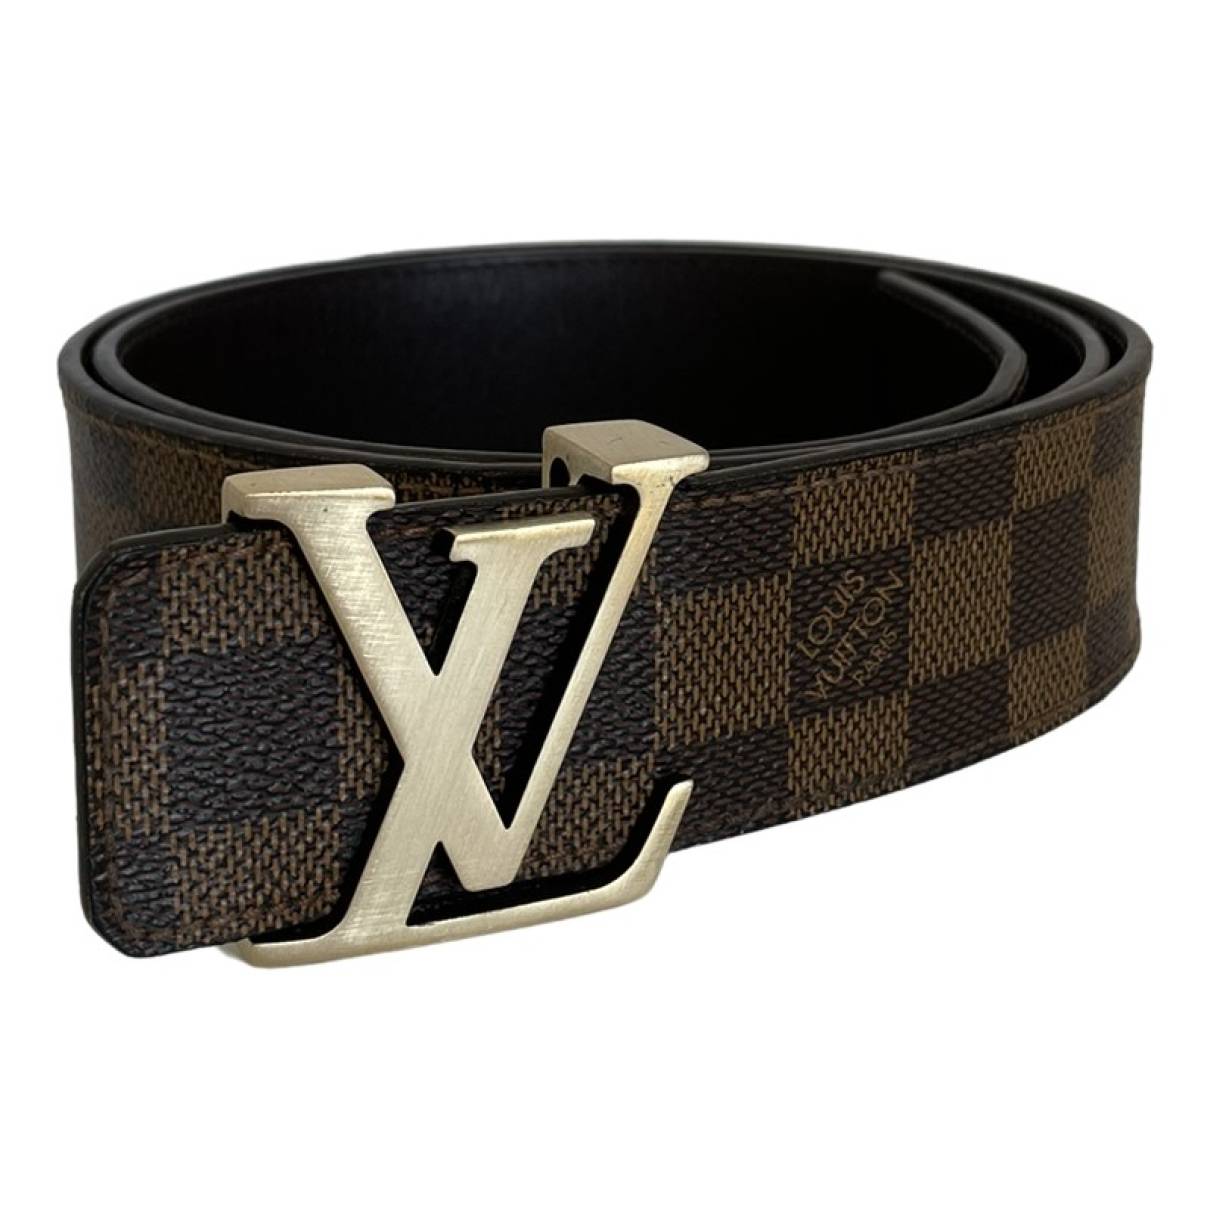 Authentique ceinture Louis Vuitton noire homme